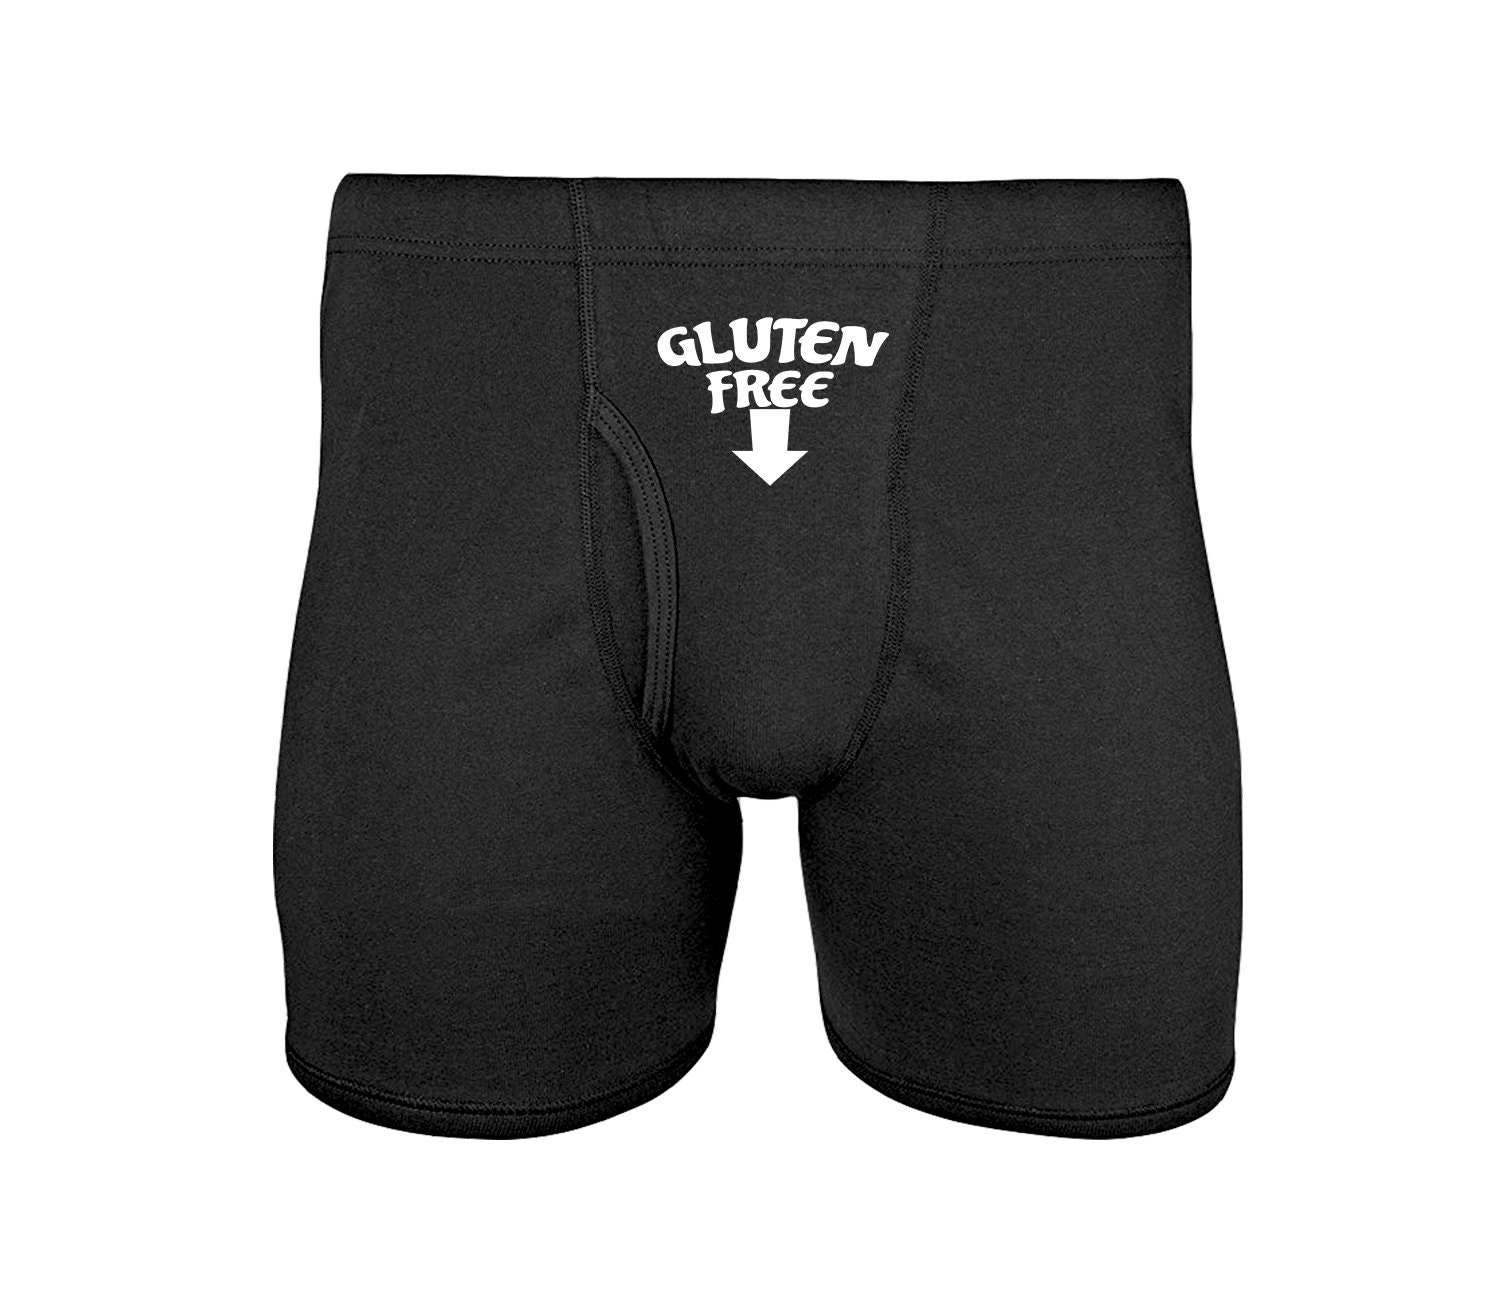 Gluten Free Men's Underwear, Funny Gift For Him